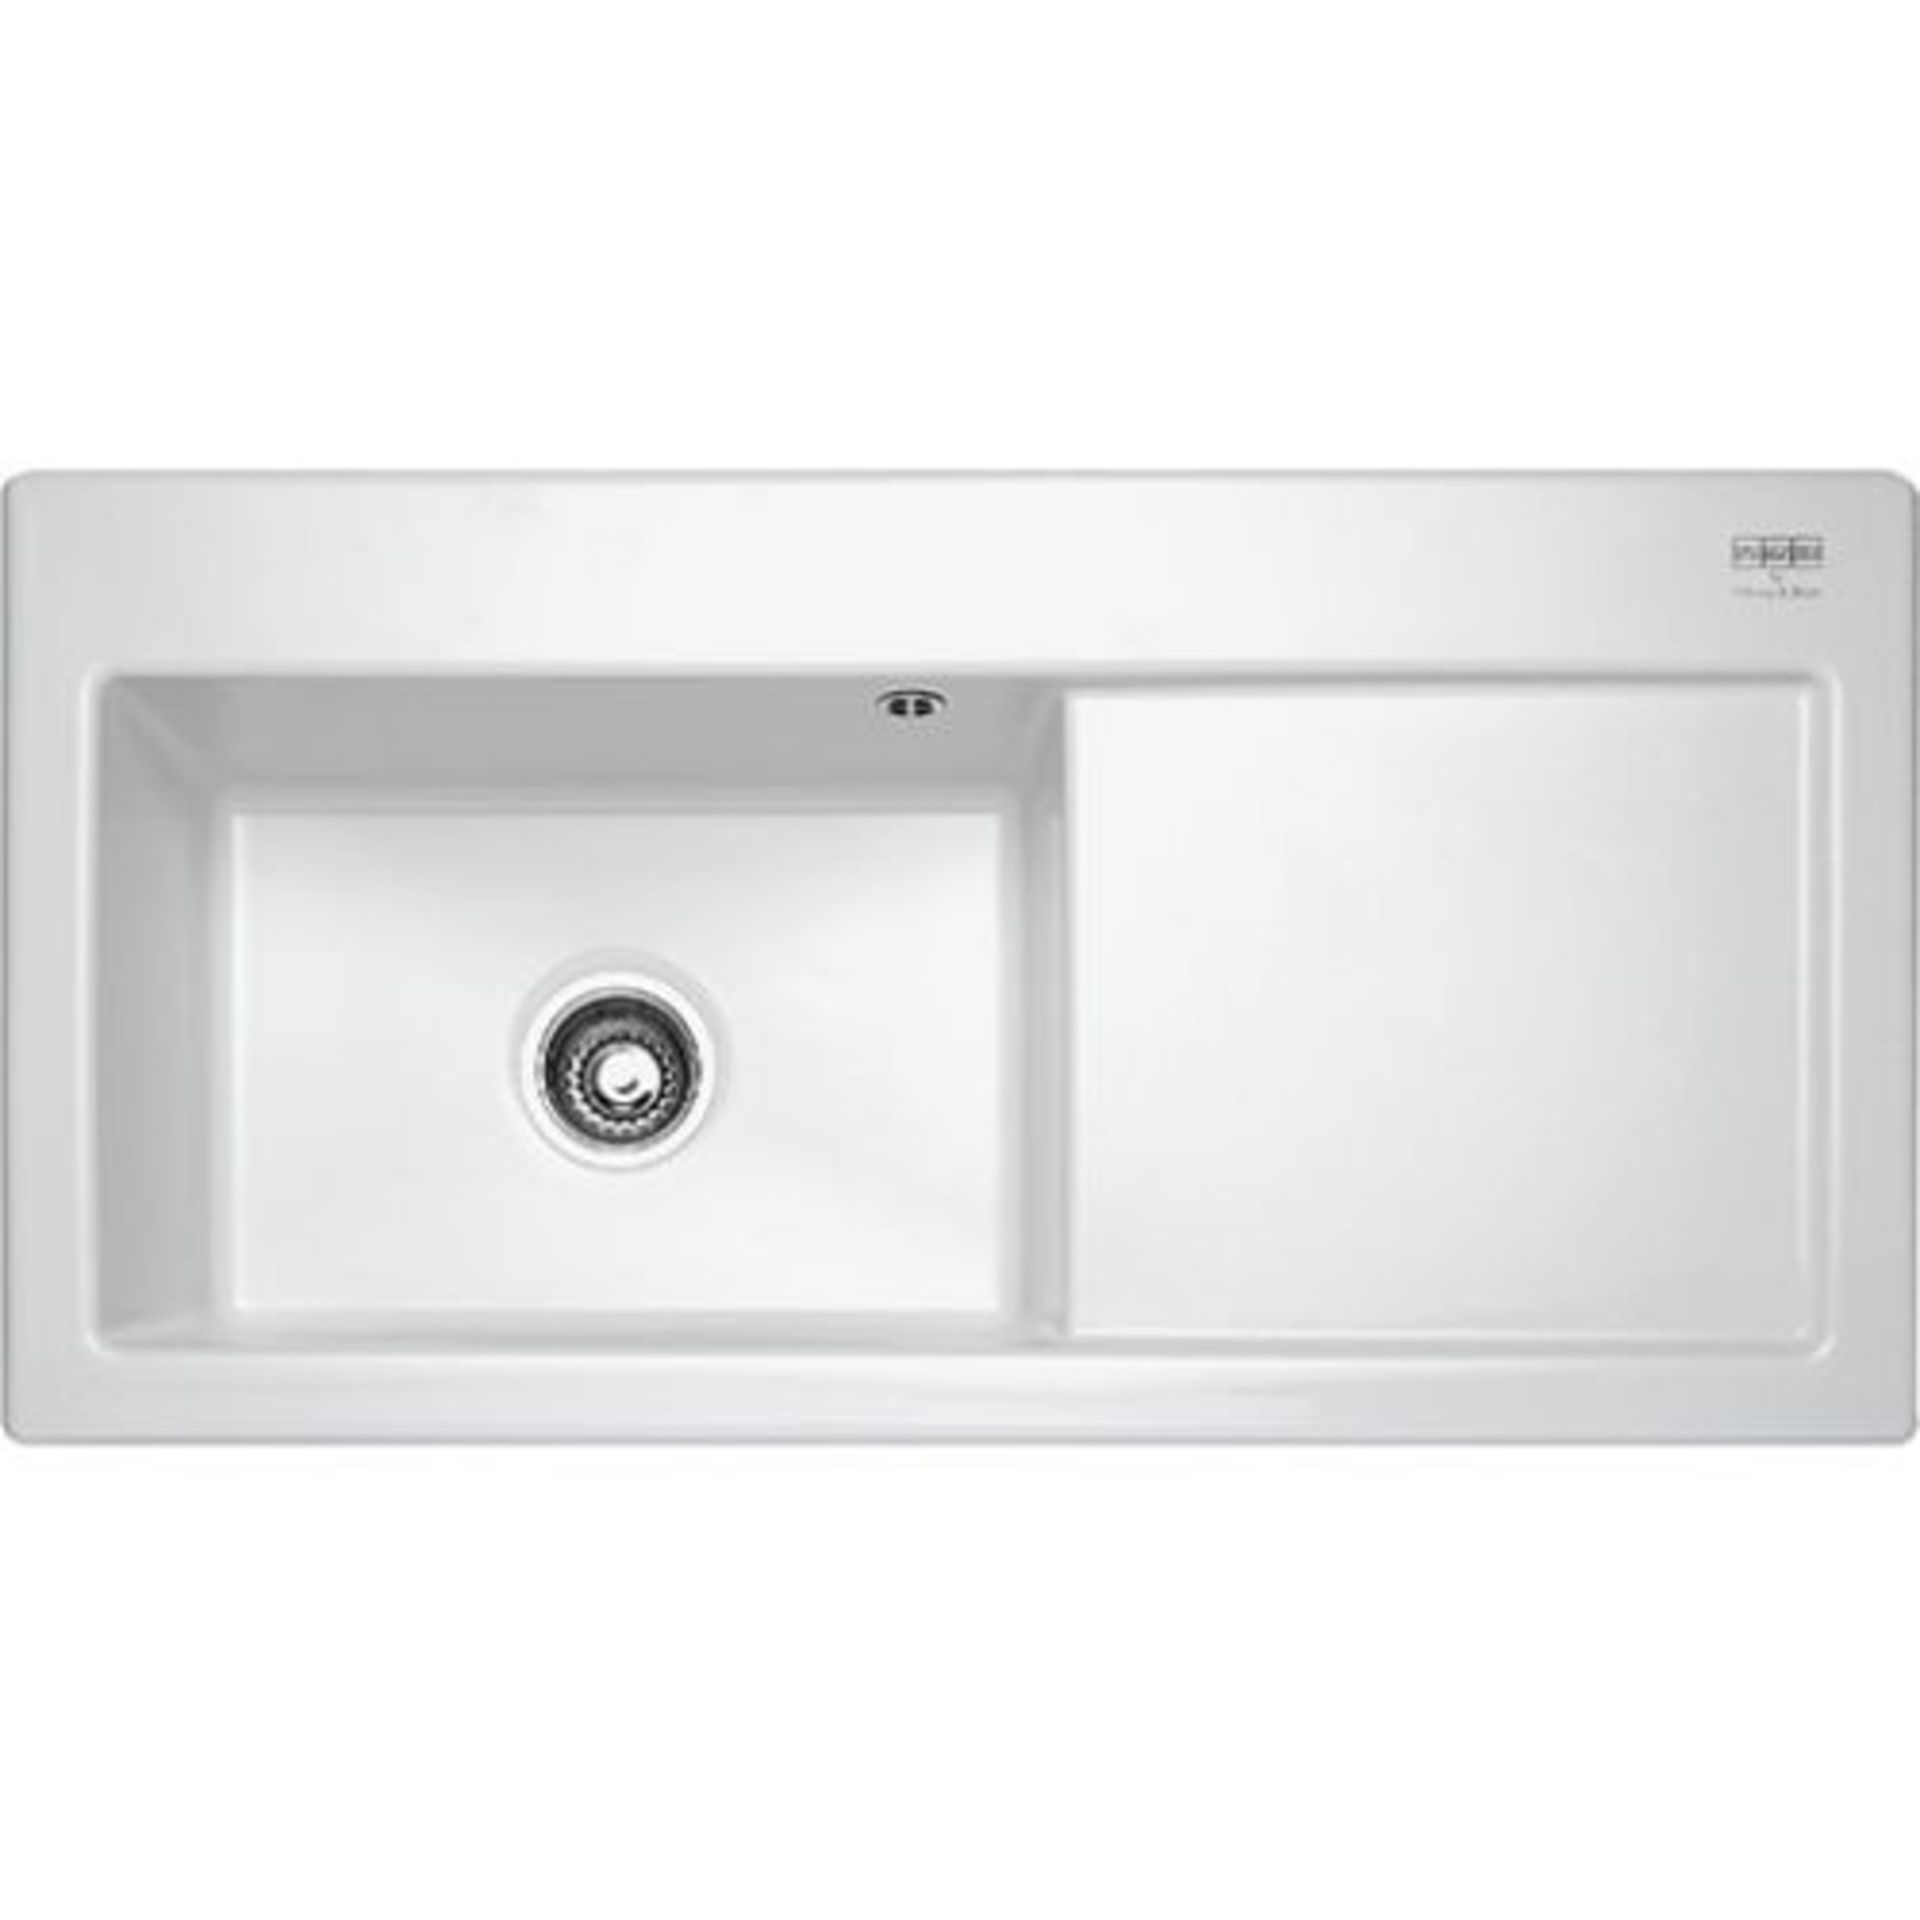 NEW (FR37) 2 X Franke Mythos Mtk 611 1b Inset Rh Kitchen Sink Ceramic White. Cabinet Size 600.00